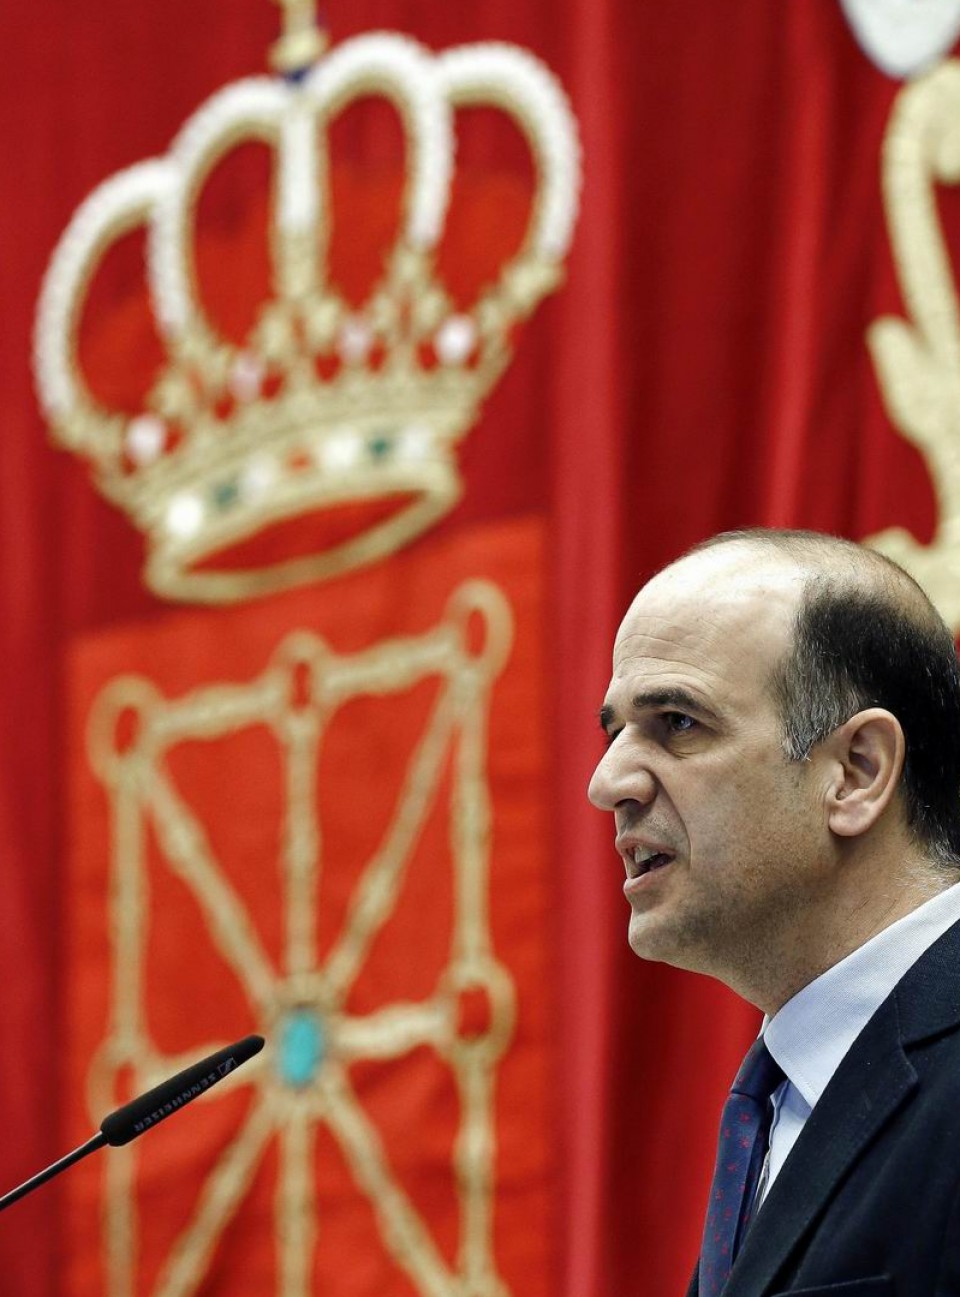  Alberto Catalán, vicepresidente de UPN y presidente del Parlamento de Navarra